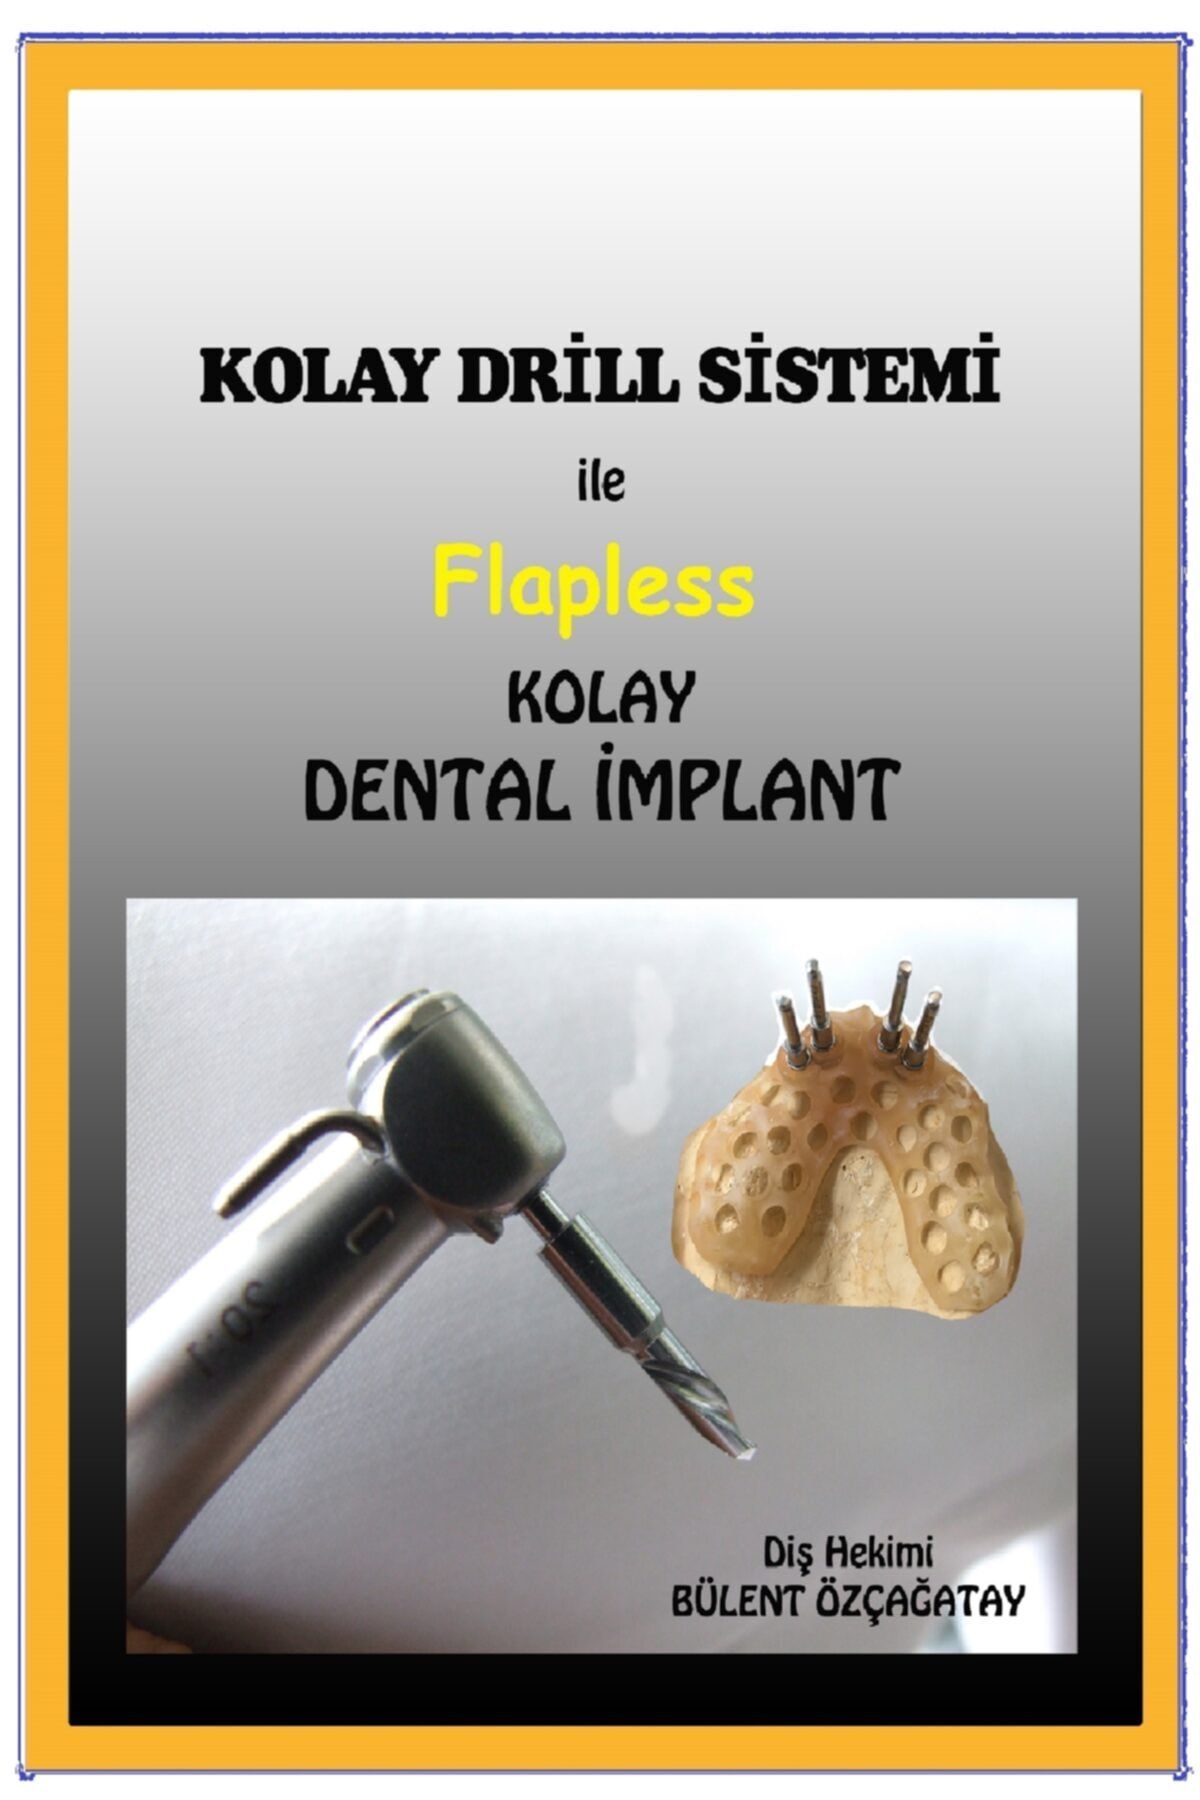 ÖzçağatayYayıncılık Kolay Drill Sistemi Ile Flapless Kolay Implant